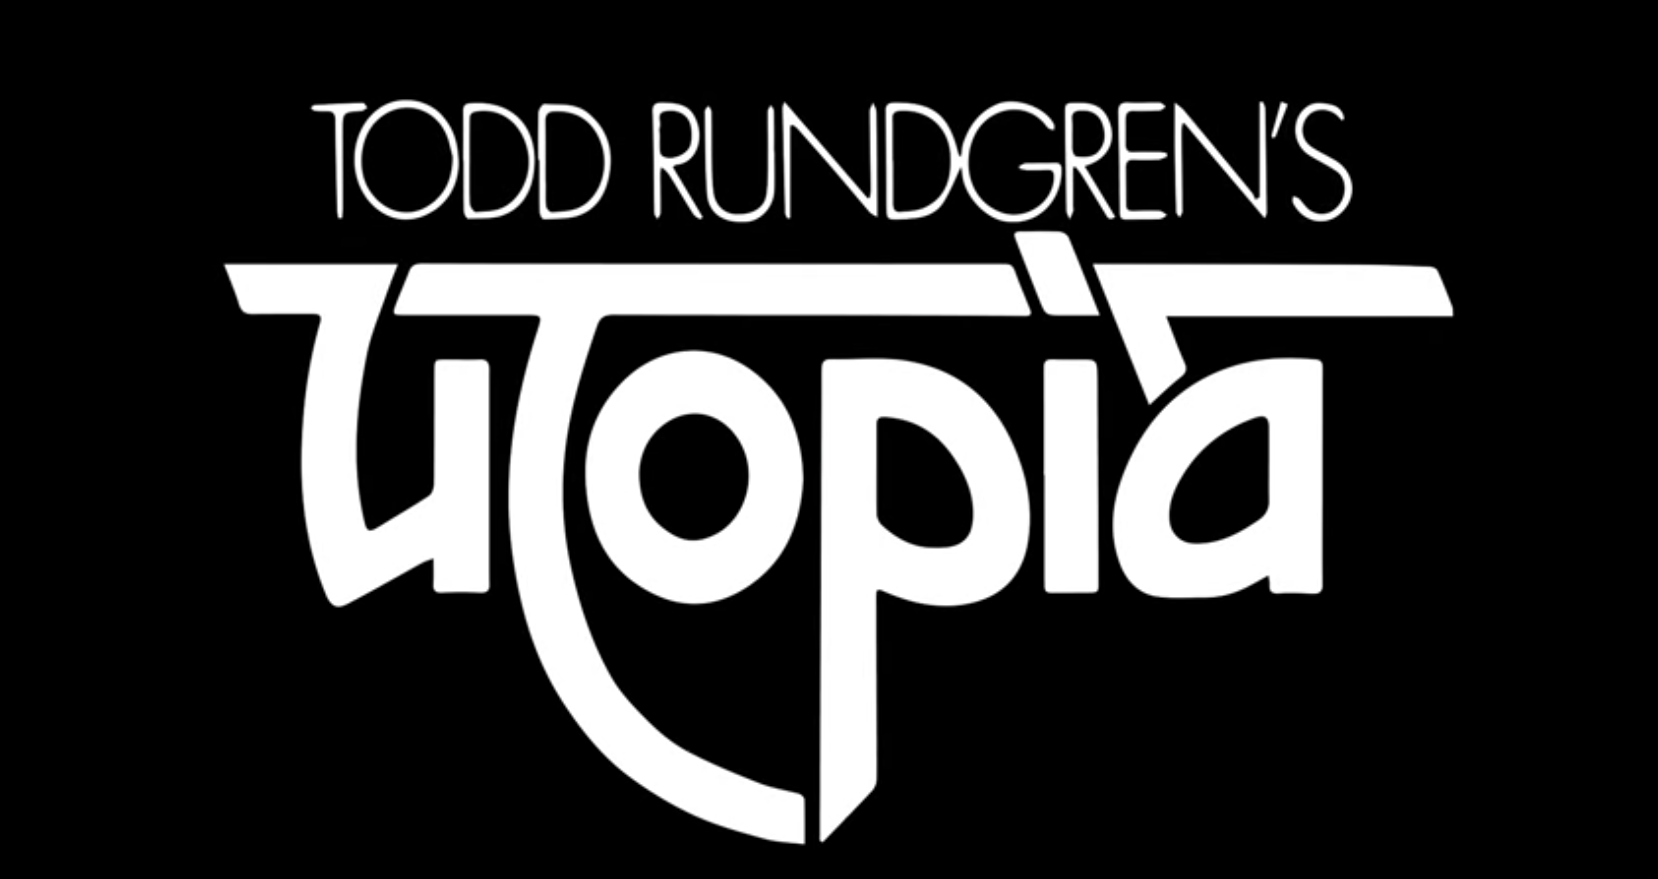 Tod Rundgren's Utopia 2018 